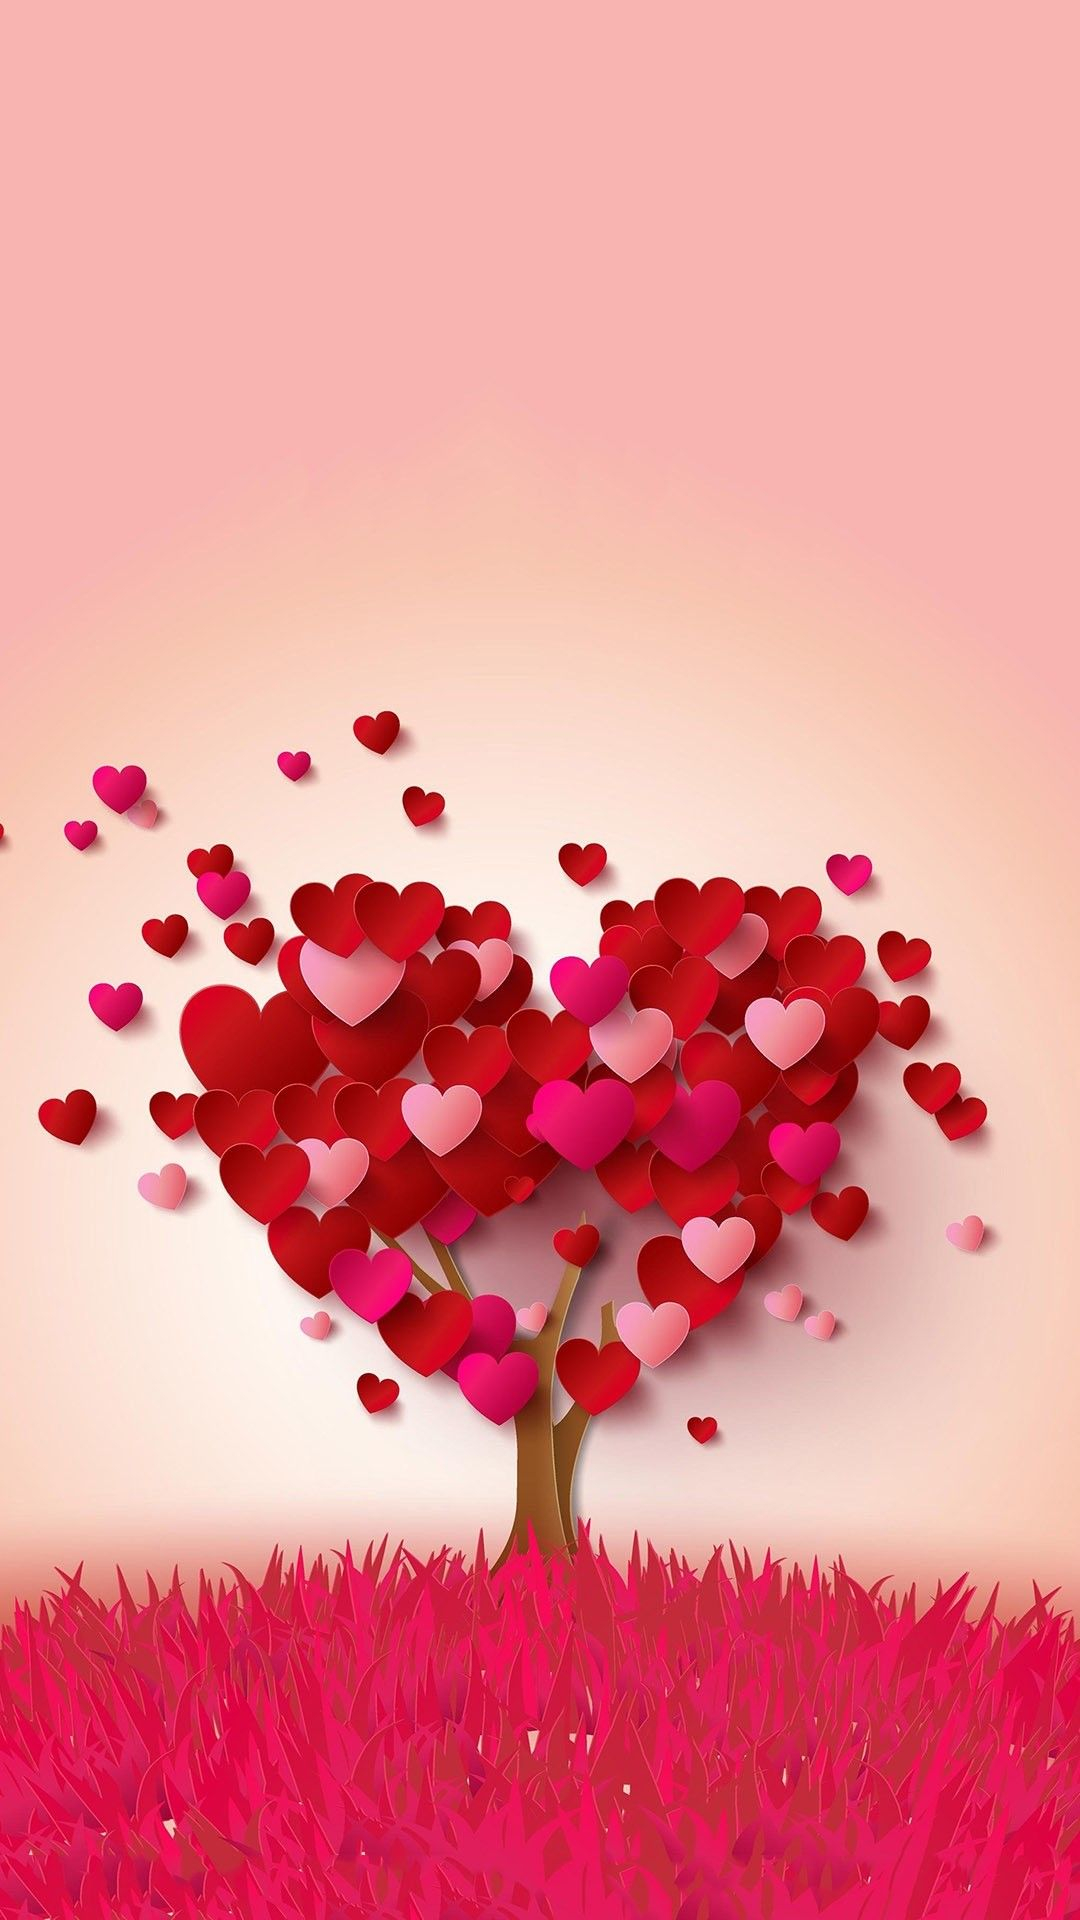 1080x1920 Valentine Background Image | Valentines wallpaper, Valentine background, Valentines day background